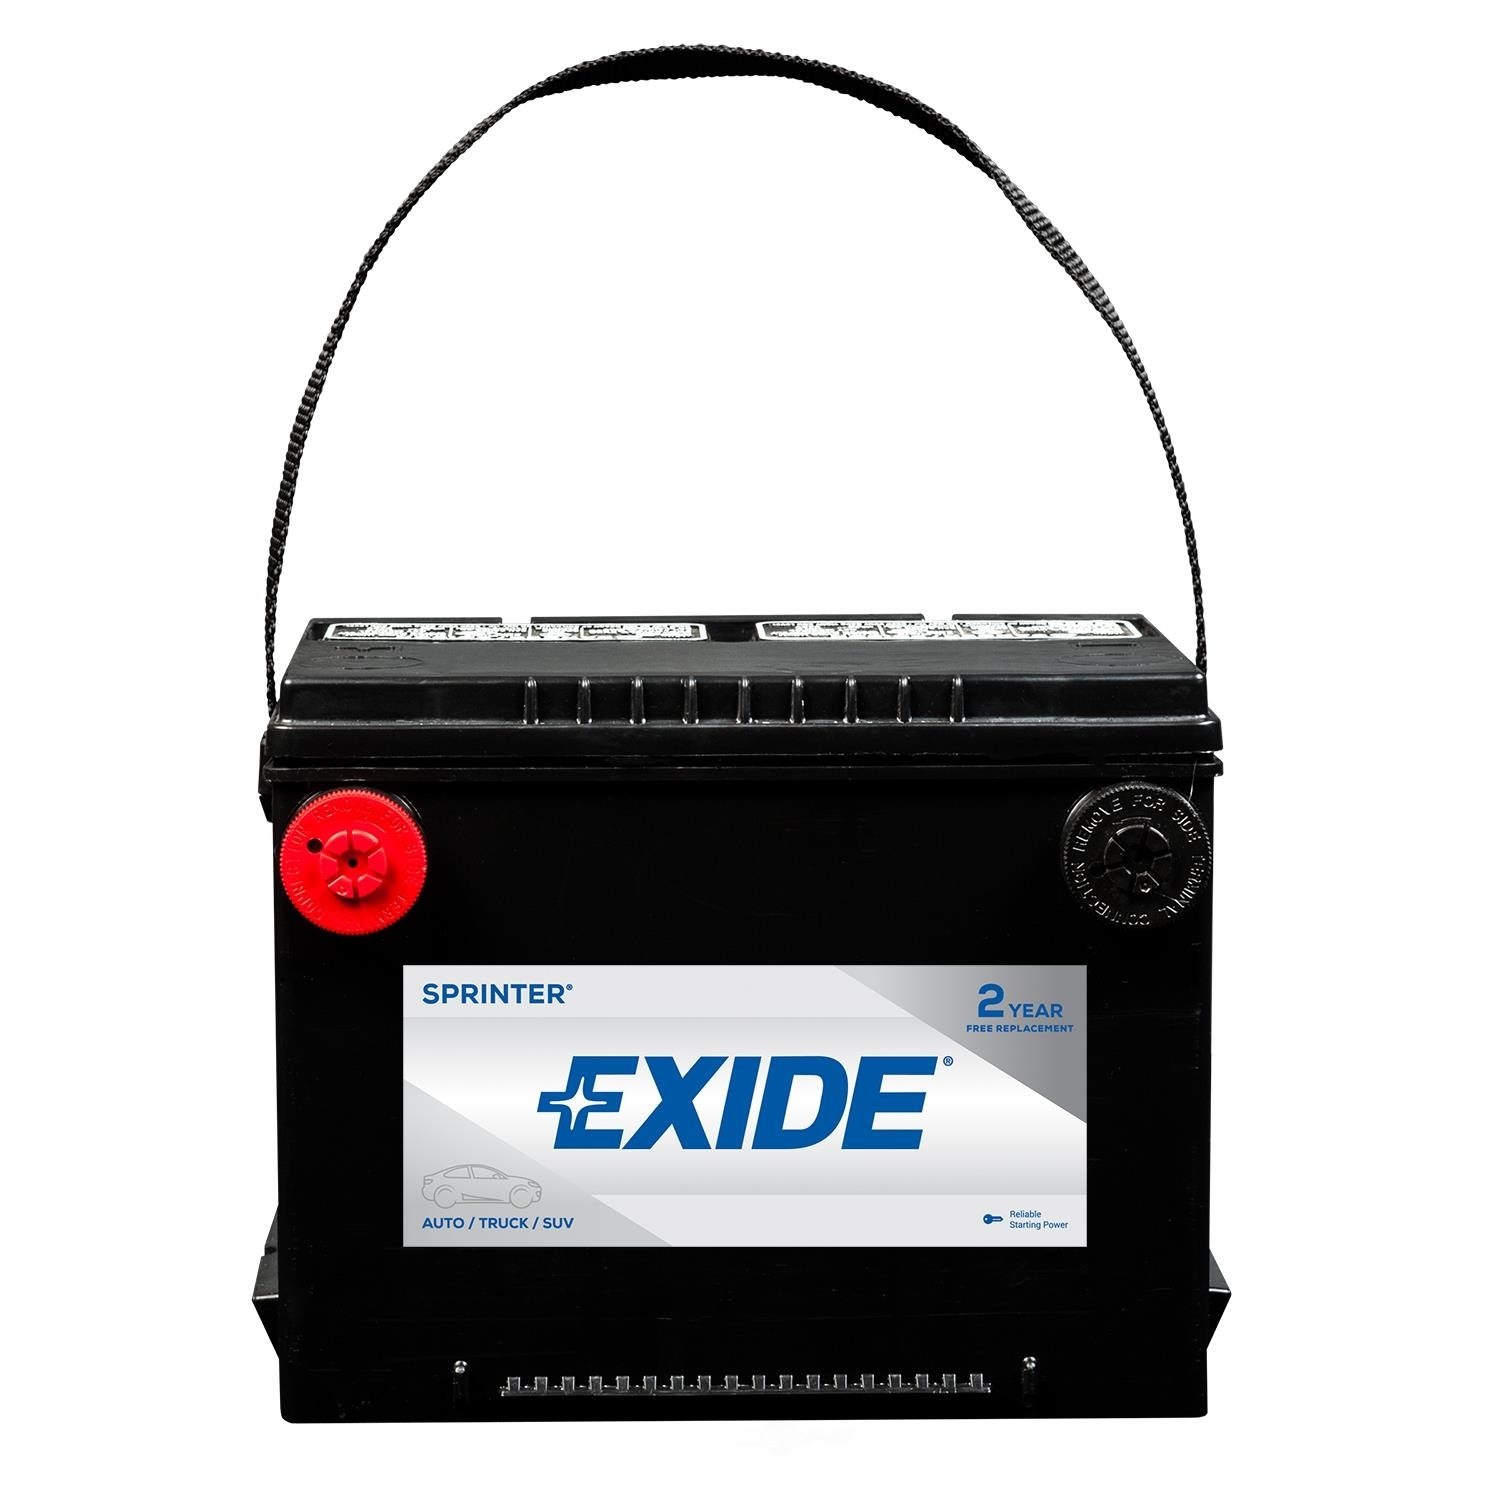 EXIDE BATTERIES - SPRINTER - CCA: 650 - EX1 S75